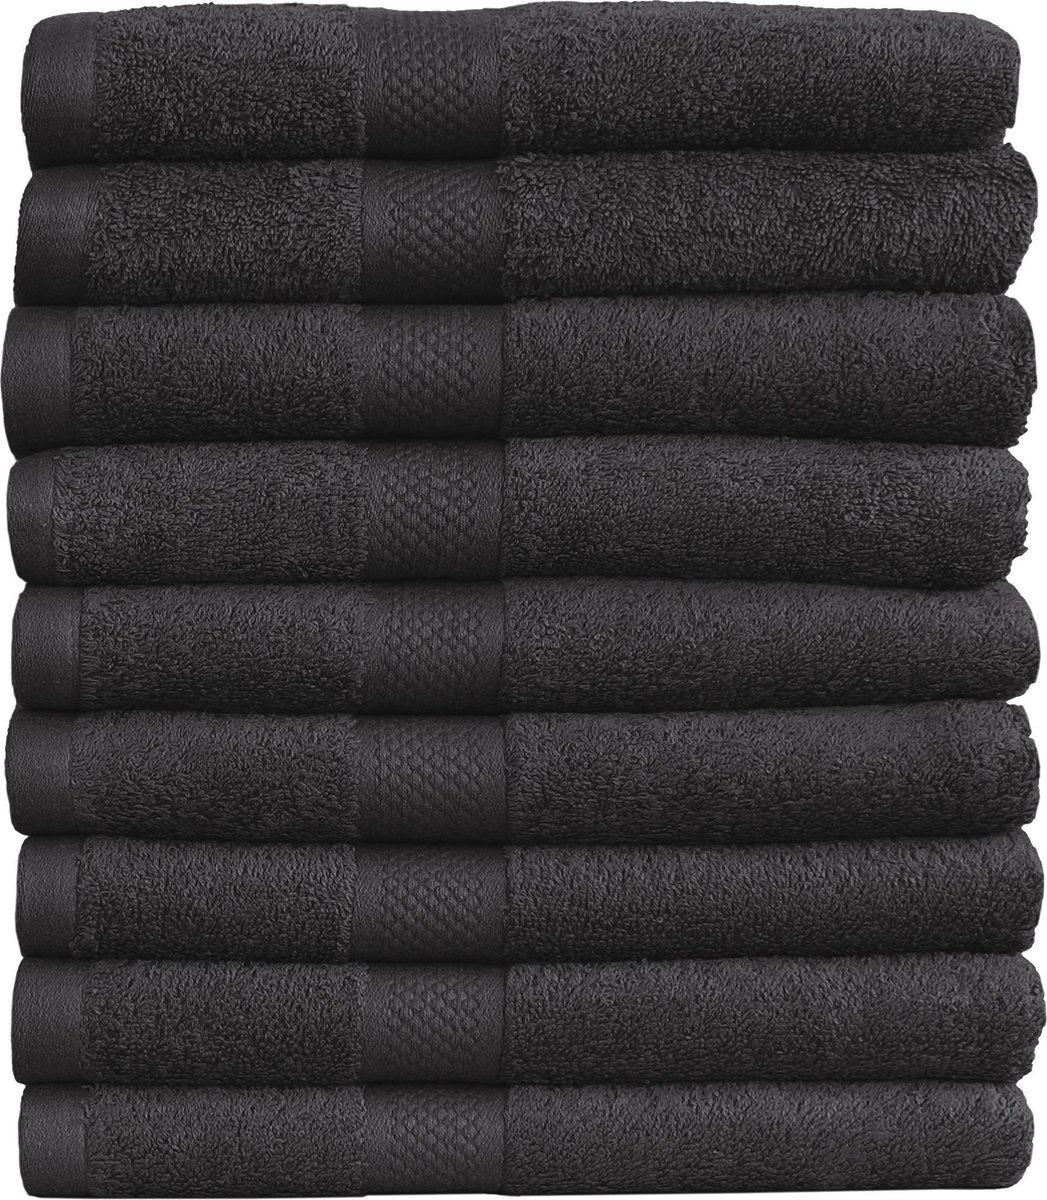 Katoenen Handdoeken Zwart – Set van 9 Stuks – 50 x 100 cm